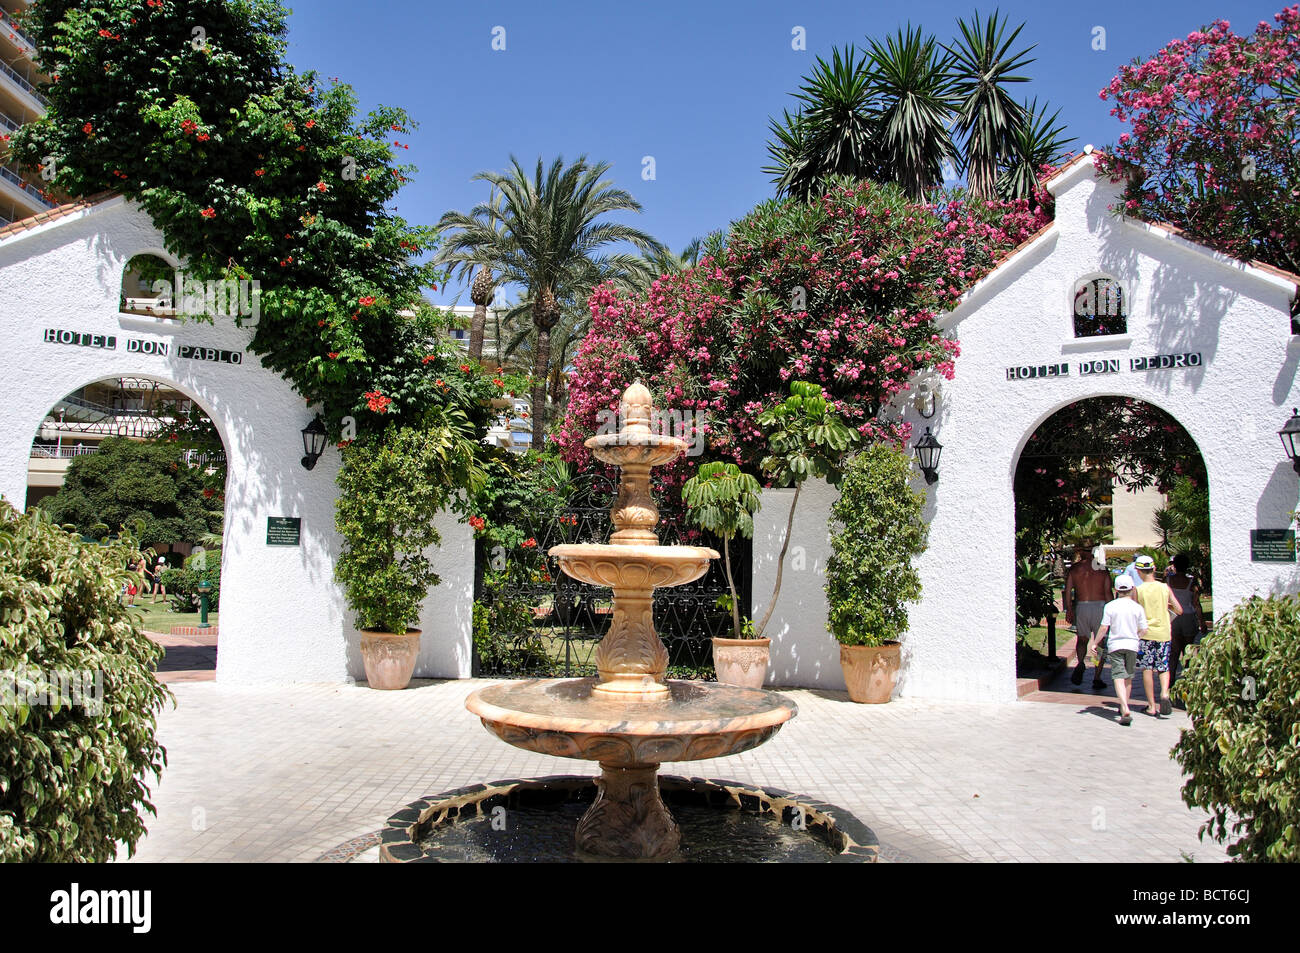 Ingresso al Sol Don Hoteles complessa, Torremolinos, Costa del Sol, provincia di Malaga, Andalusia, Spagna Foto Stock